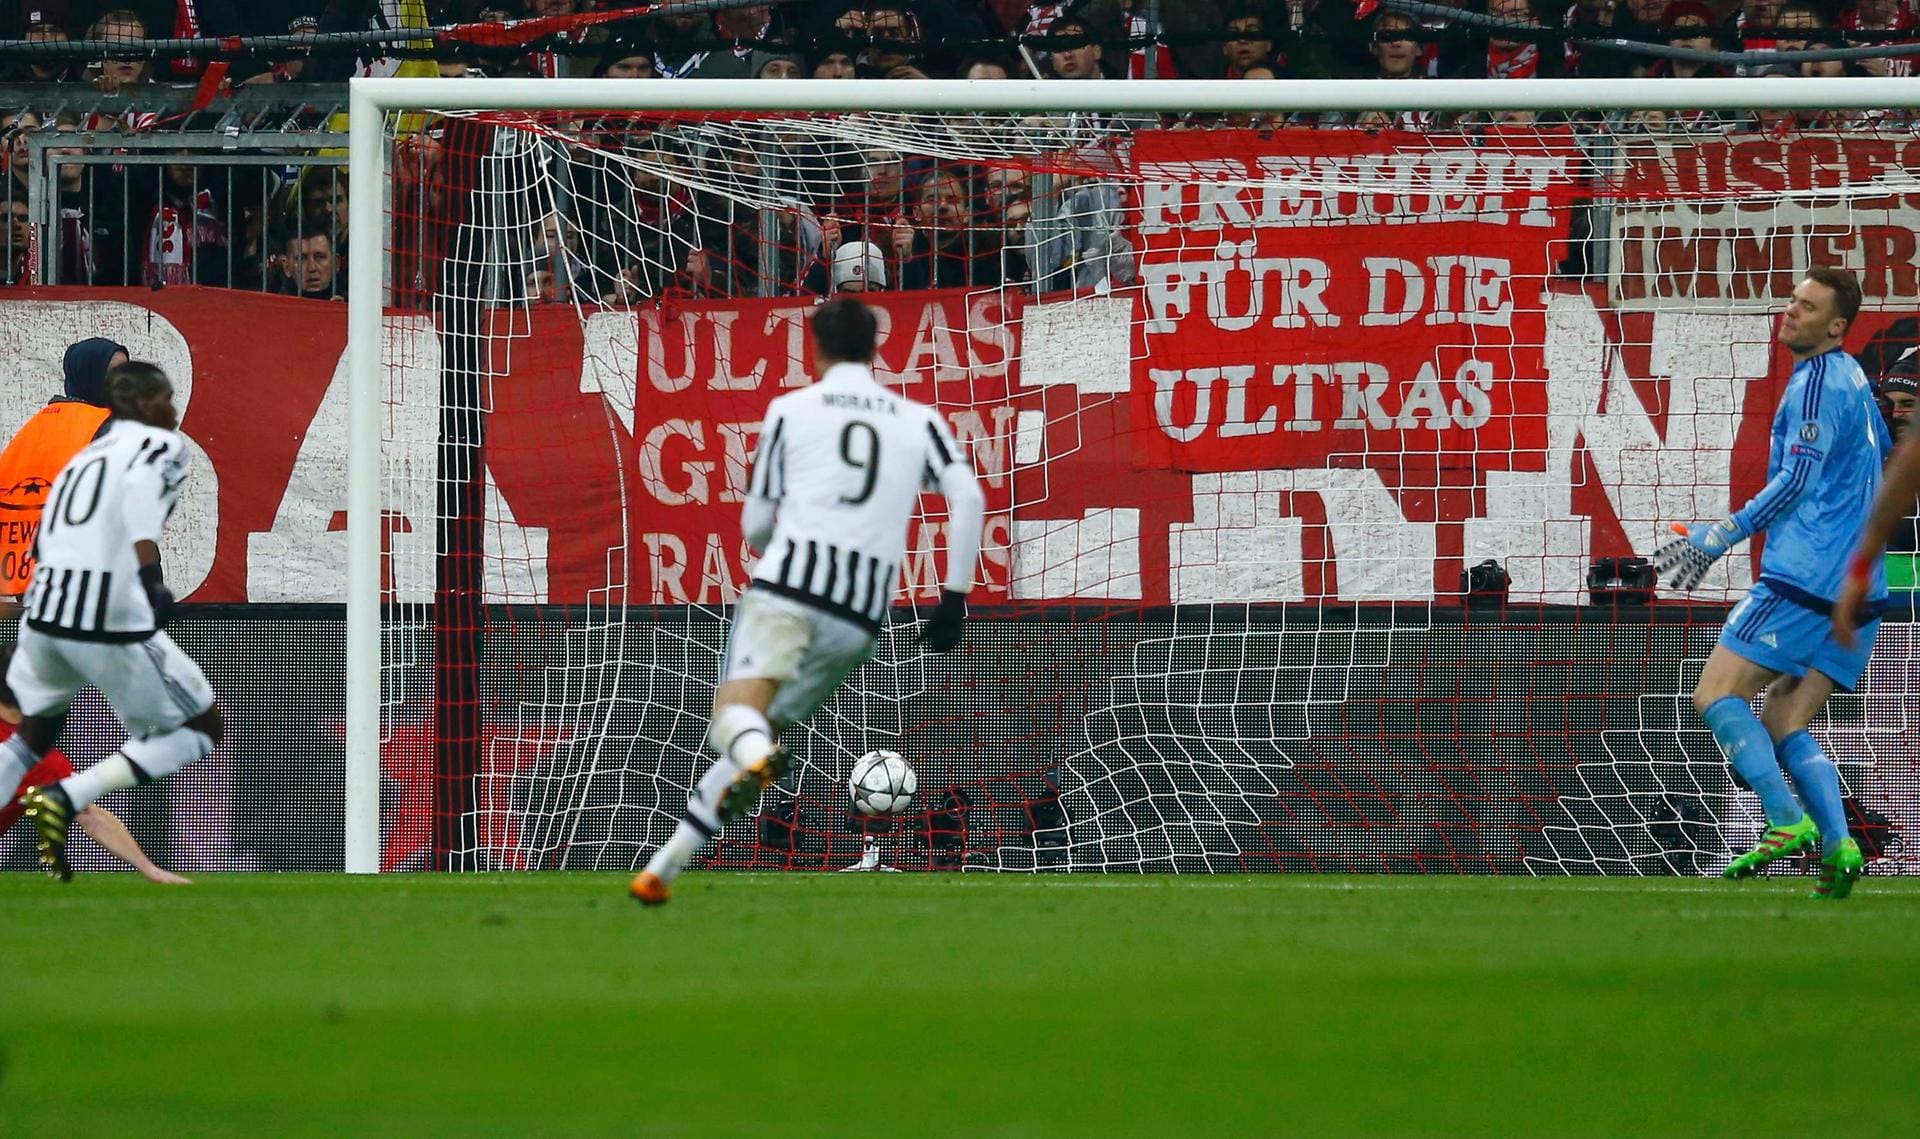 Das Spiel zwischen dem FC Bayern und Juventus Turin ist erst fünf Minuten alt - da zappelt der Ball schon im Netz. Und zwar beim deutschen Rekordmeister! Paul Pogba (li.) trifft, Manuel Neuer (re.) kann nur den Kopf schütteln.